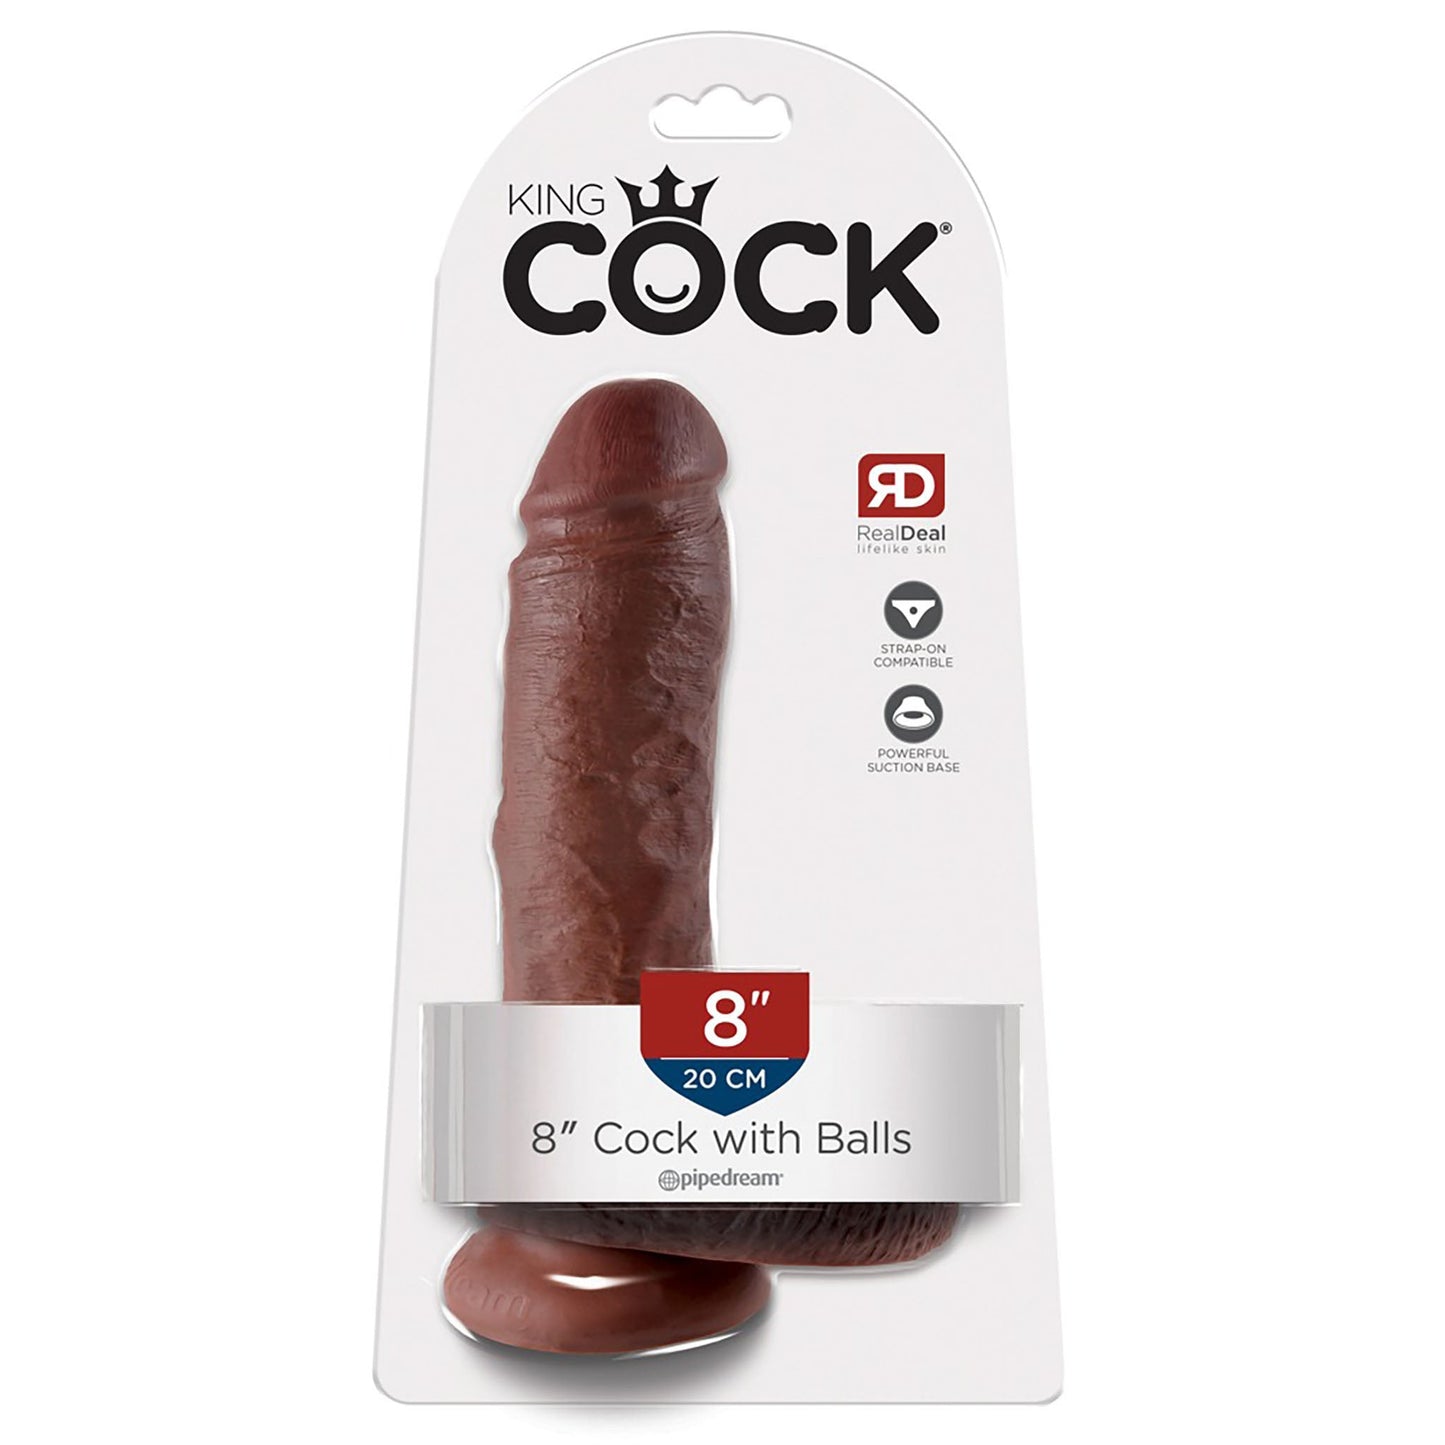 cock neben dose als größenvergleich, eier nach links, steht grade und dick